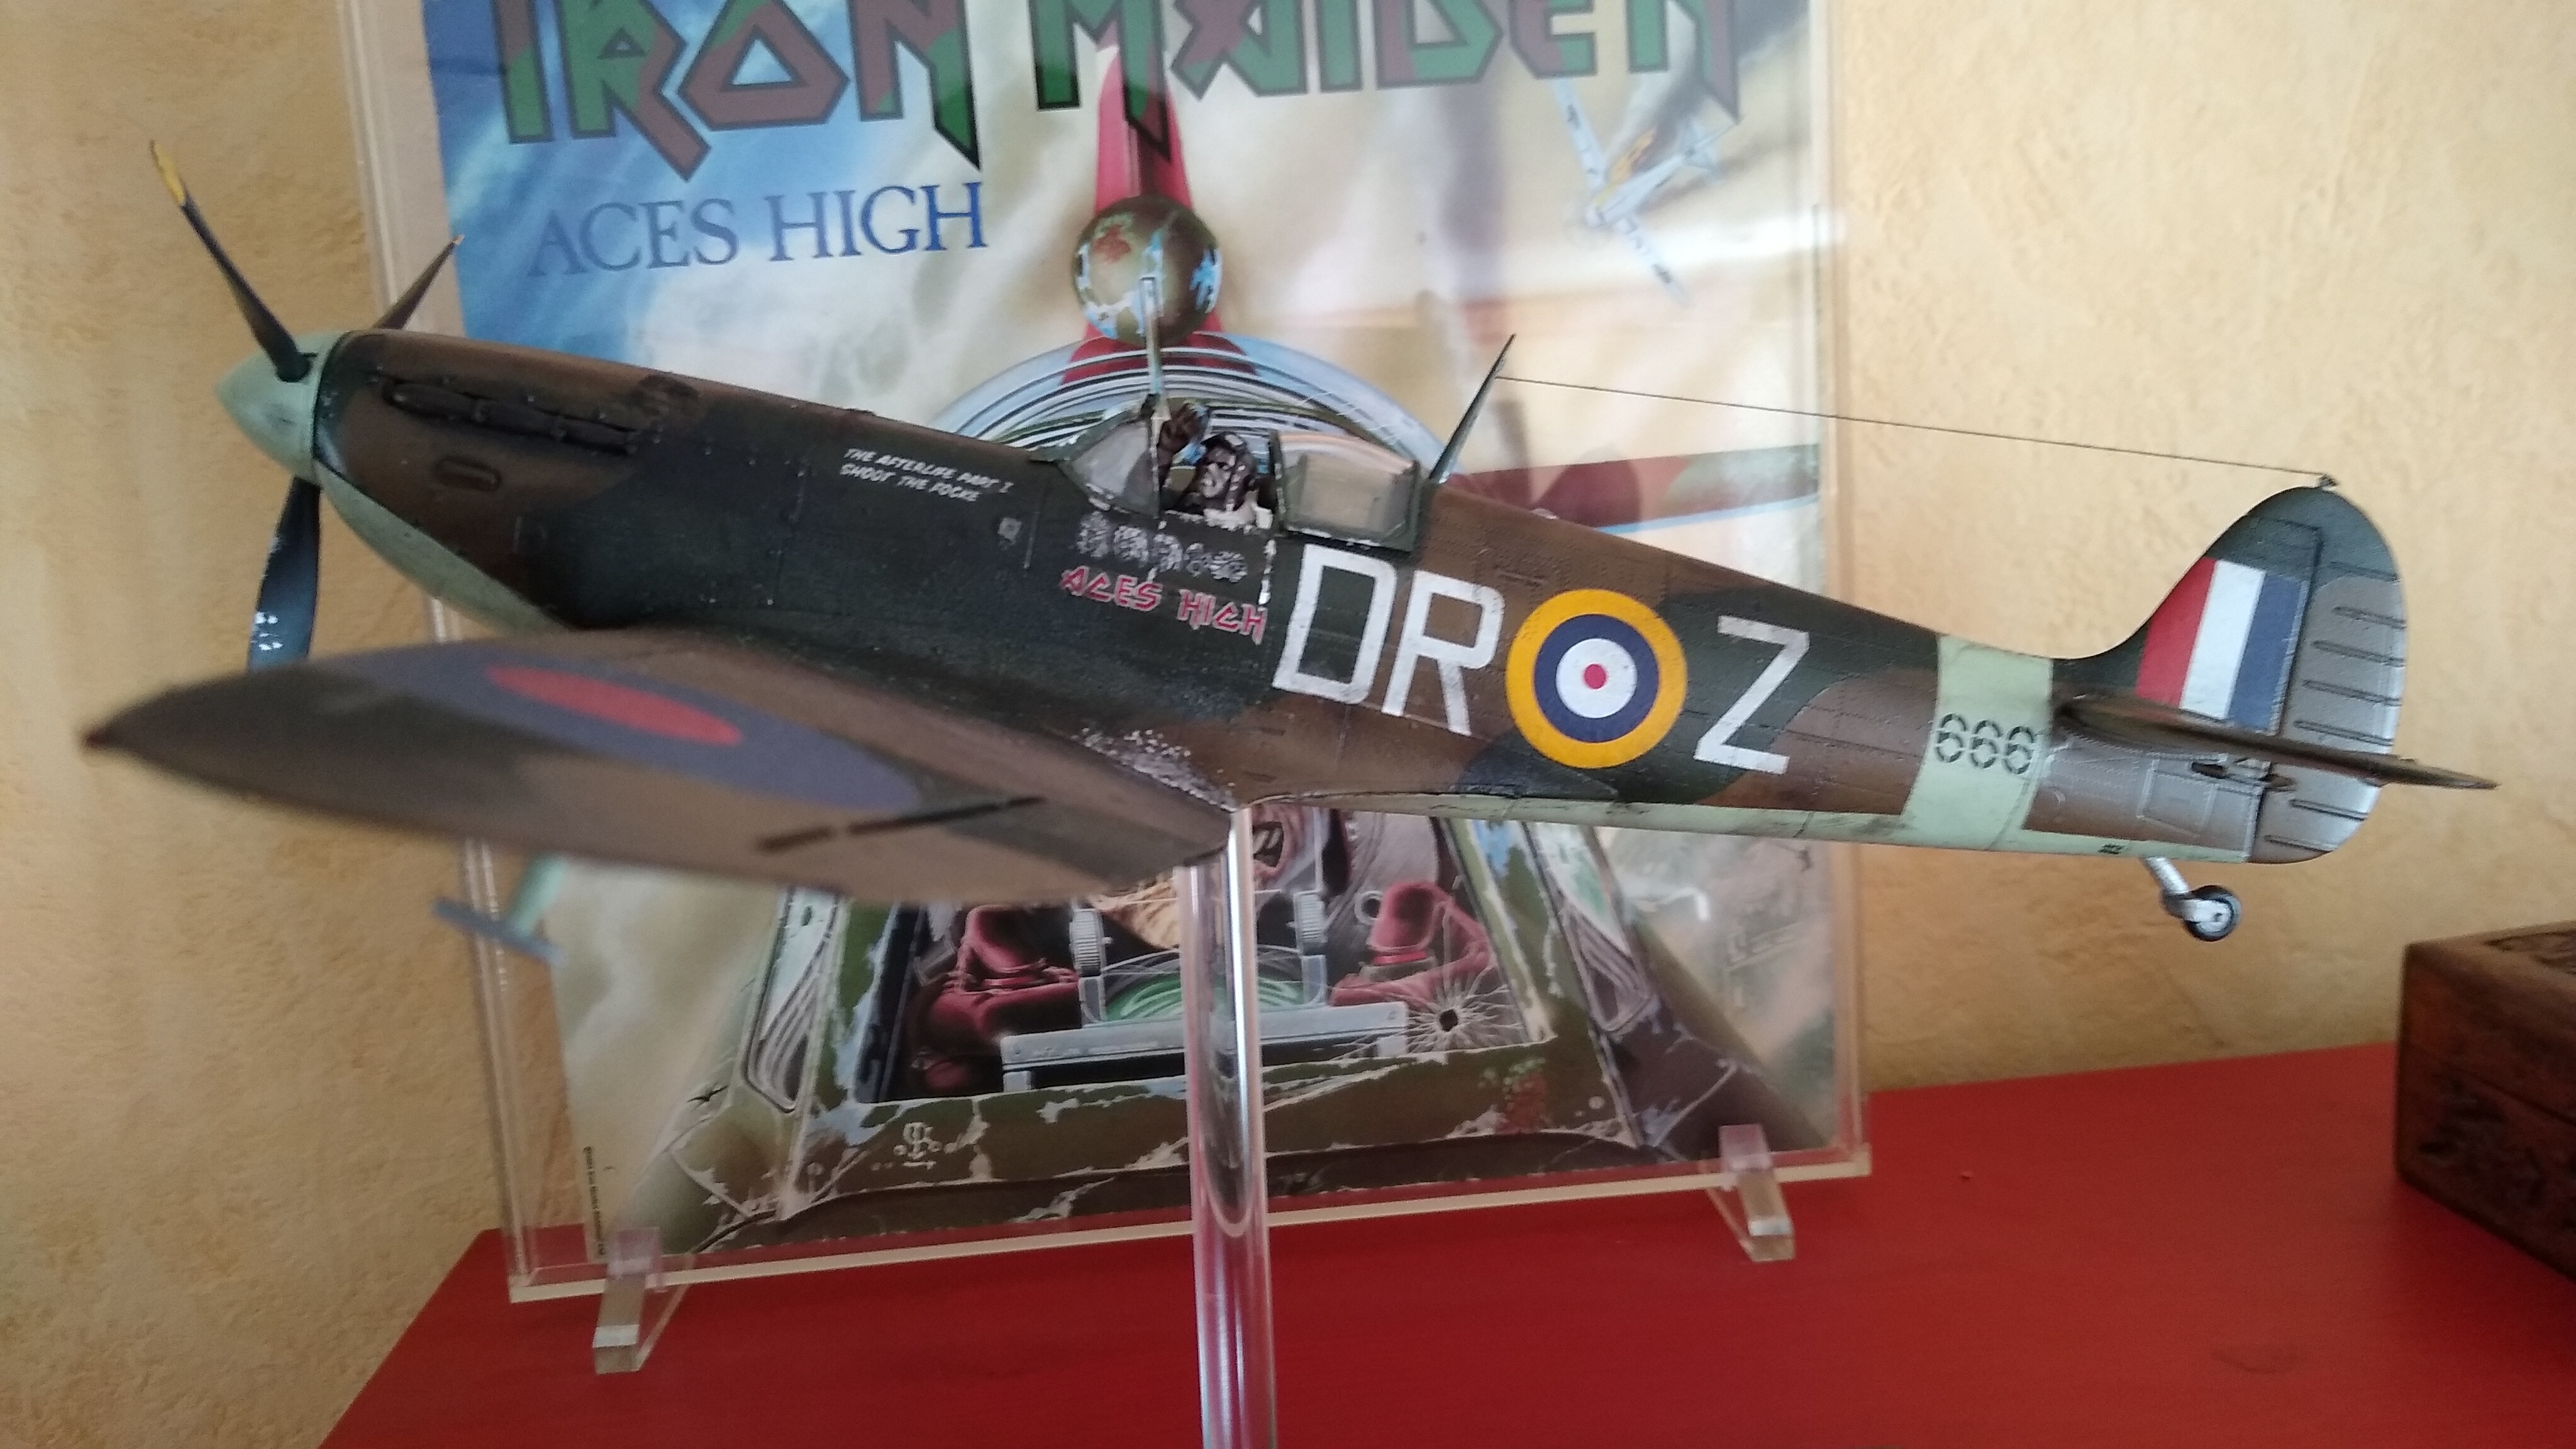 Spitfire Mk2 Iron Maiden "Aces High" Vffu